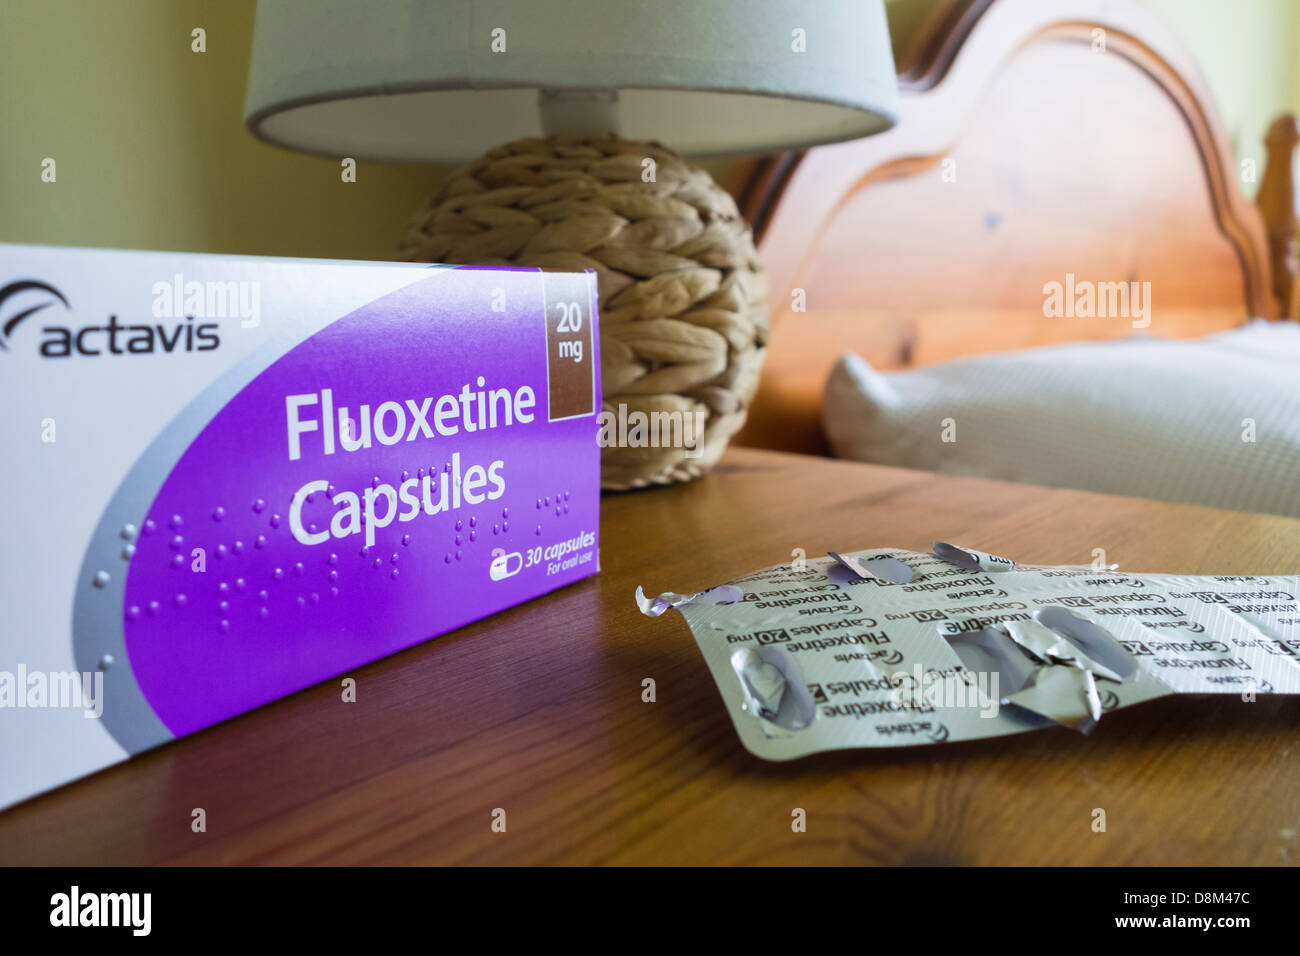 Fluoxetine anti depressant capsules Stock Photo - Alamy